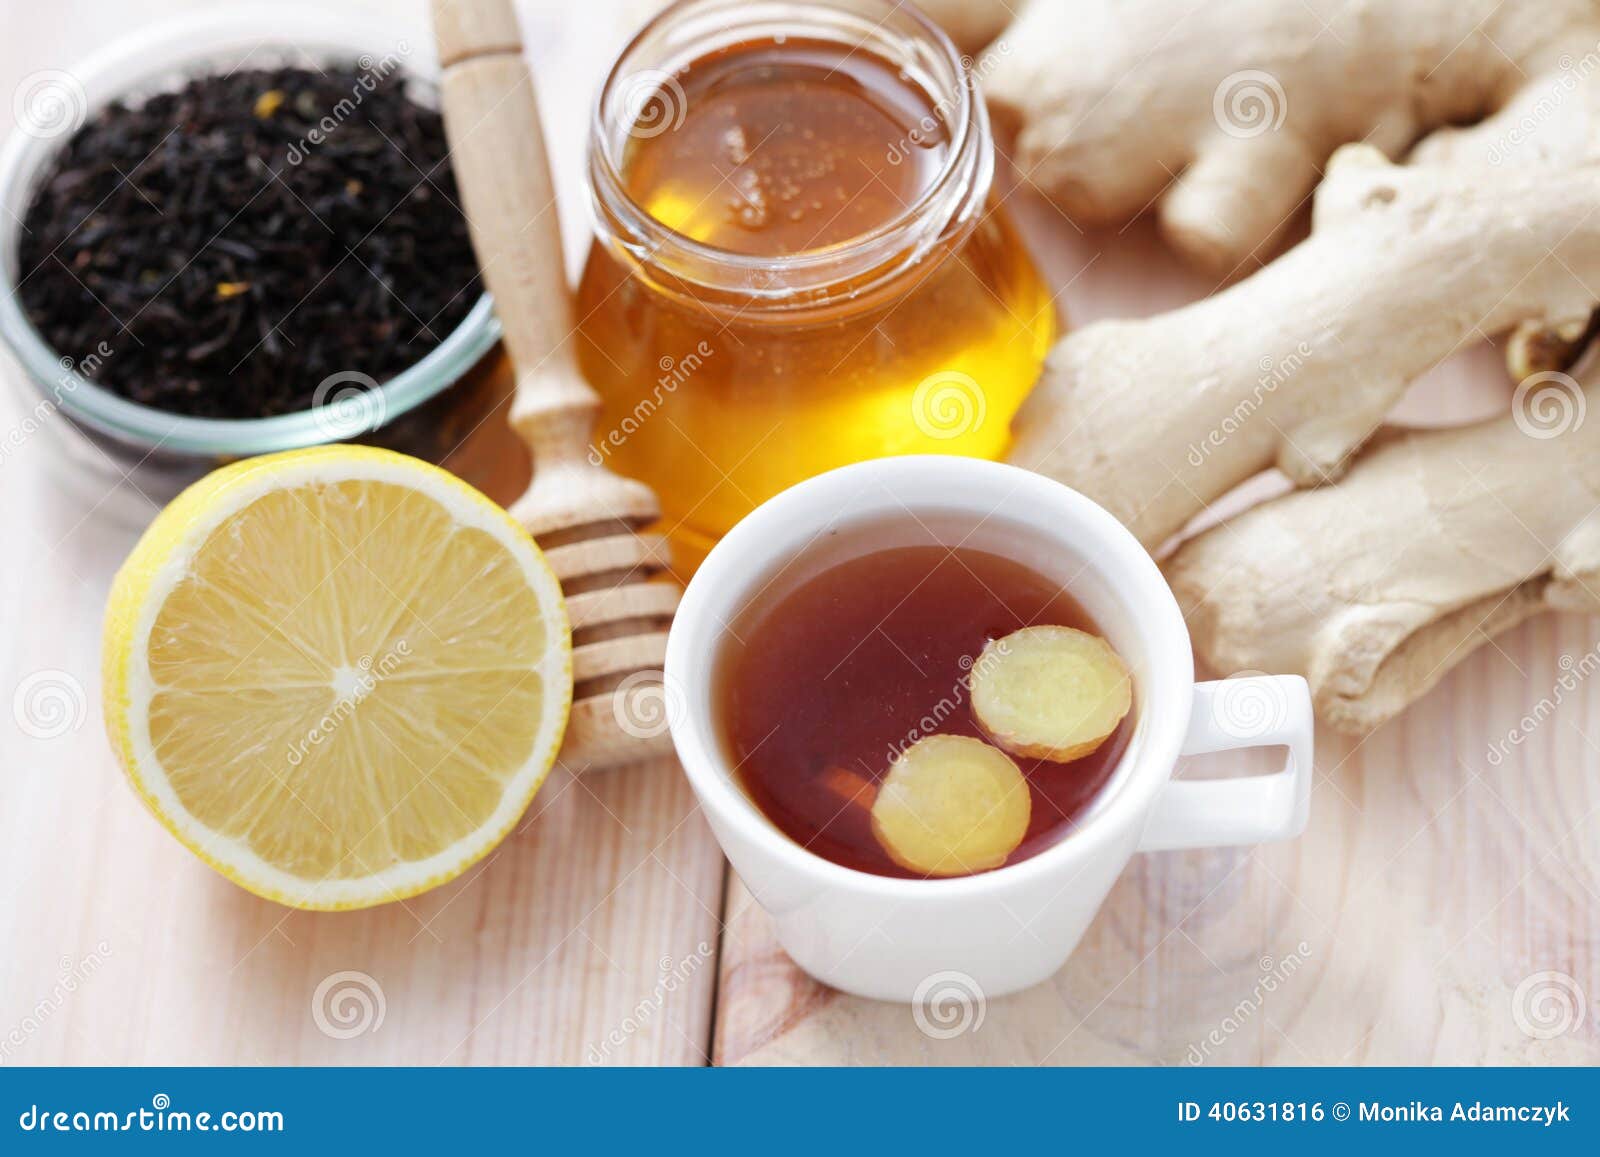 При температуре пьют горячий чай. Имбирный чай. Чай с медом. Чай с имбирем. Чай с лимоном и имбирем.